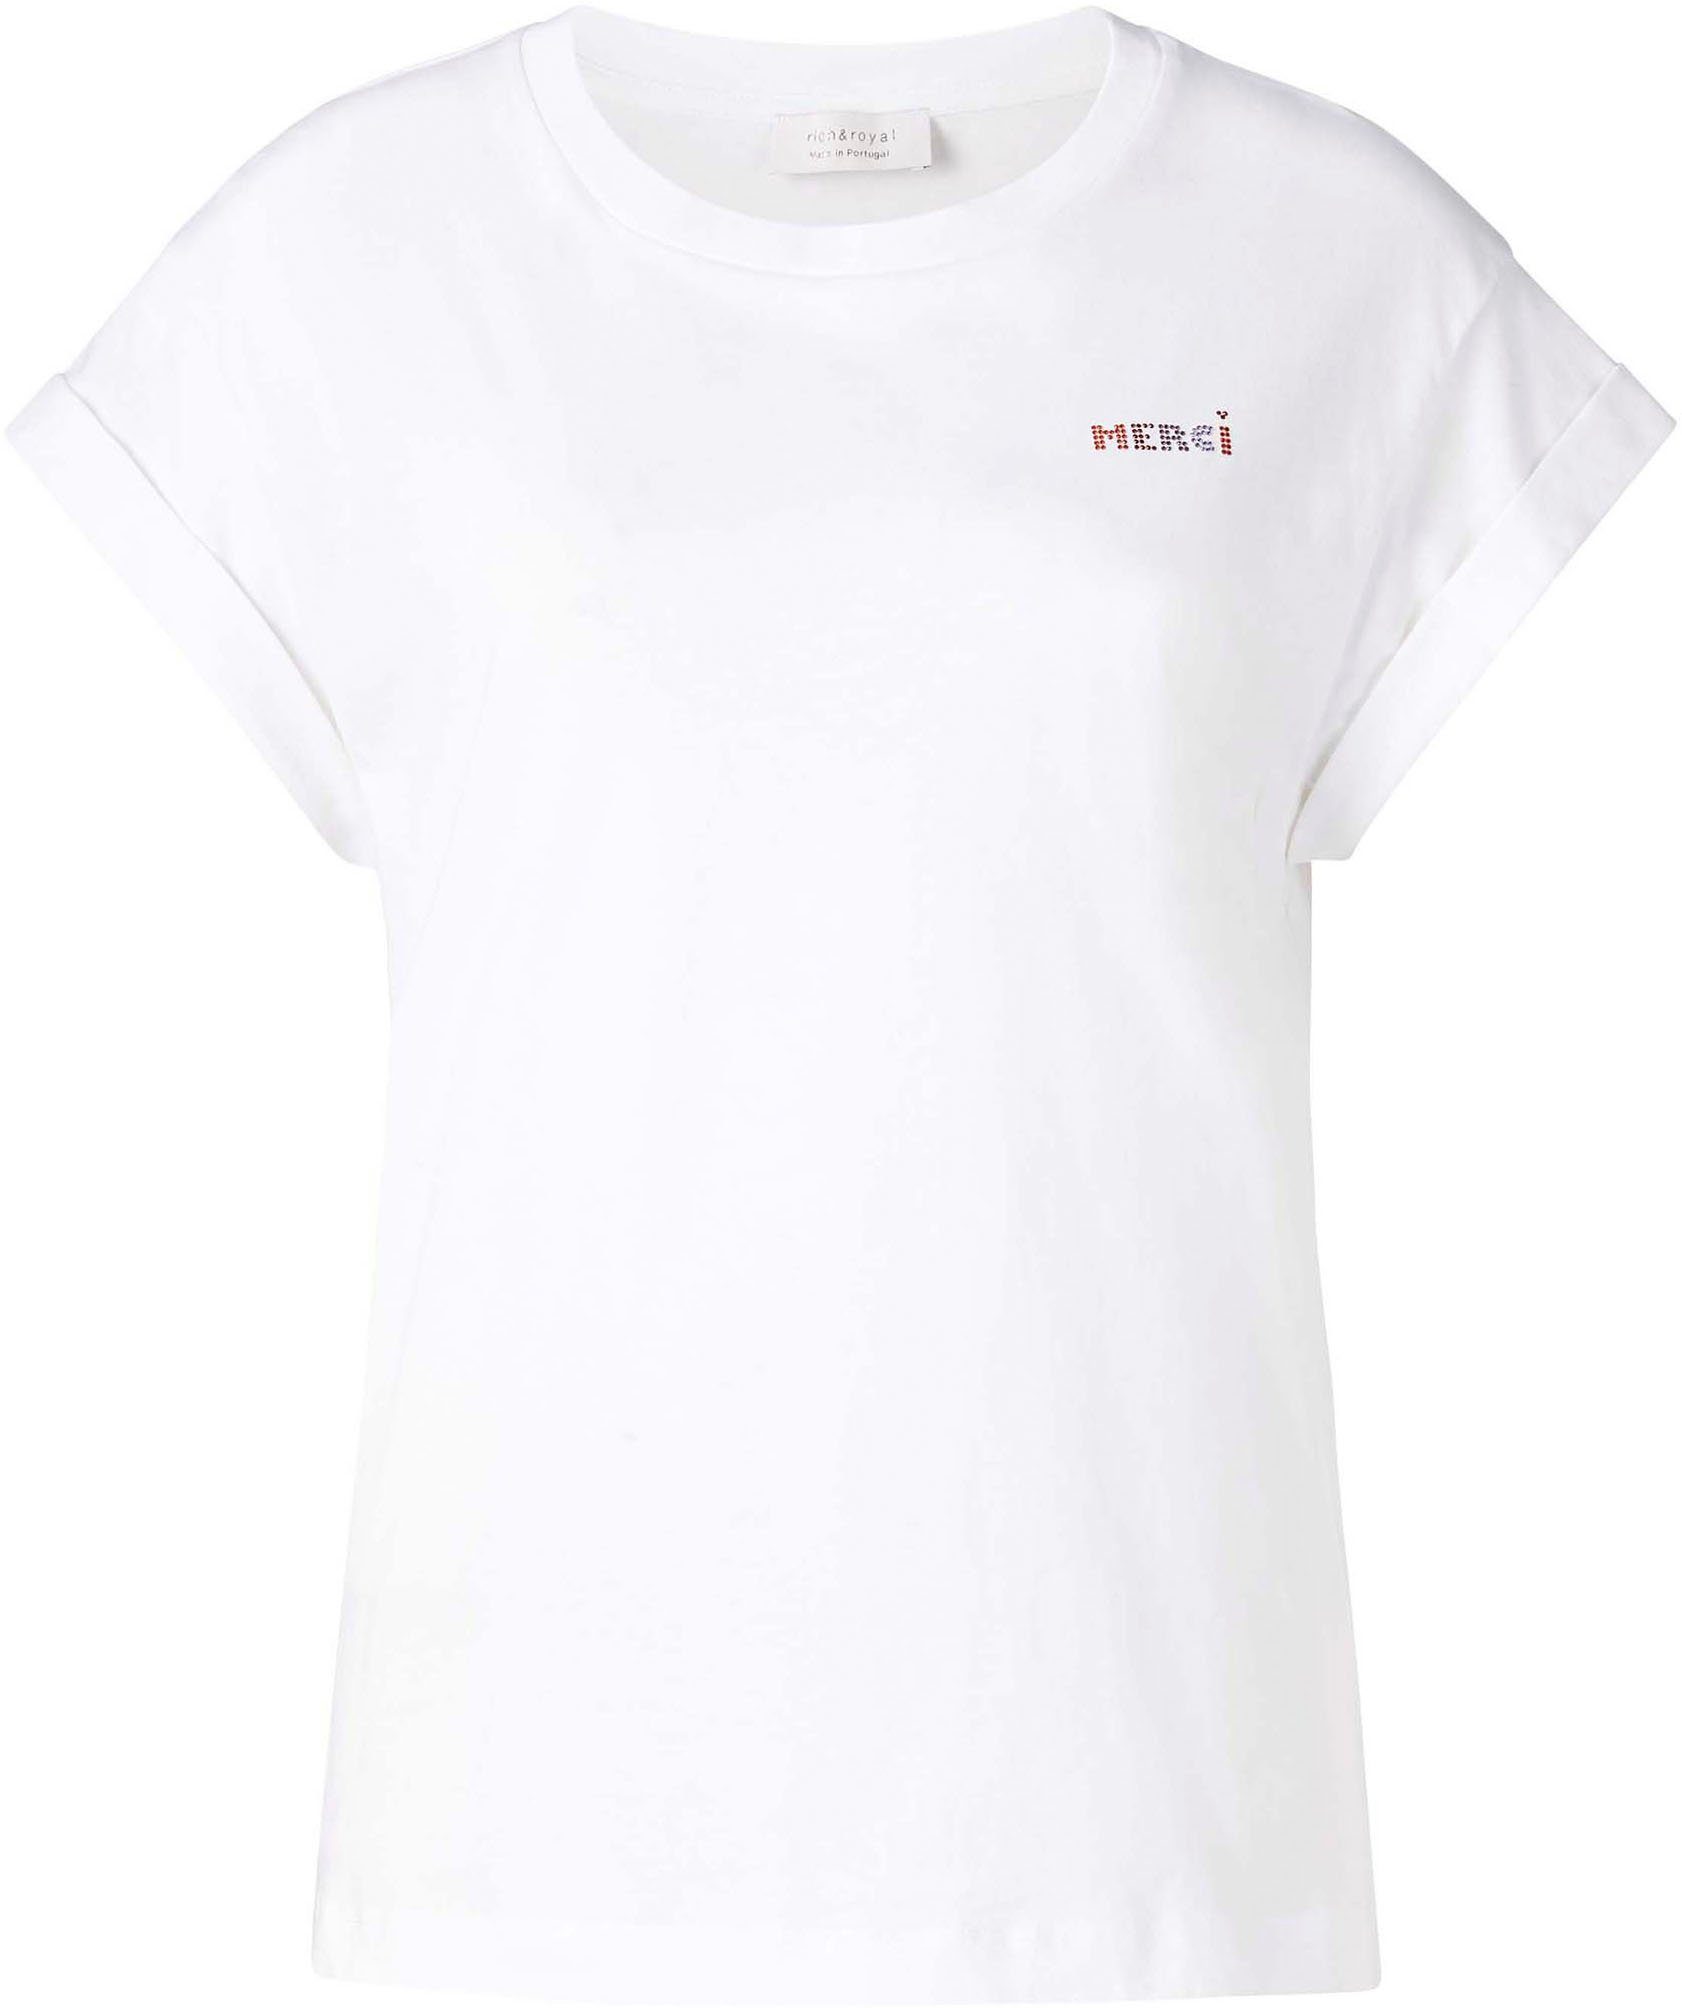 Rich & Royal in weiß Brusthöhe mit Glitzer-Print original T-Shirt